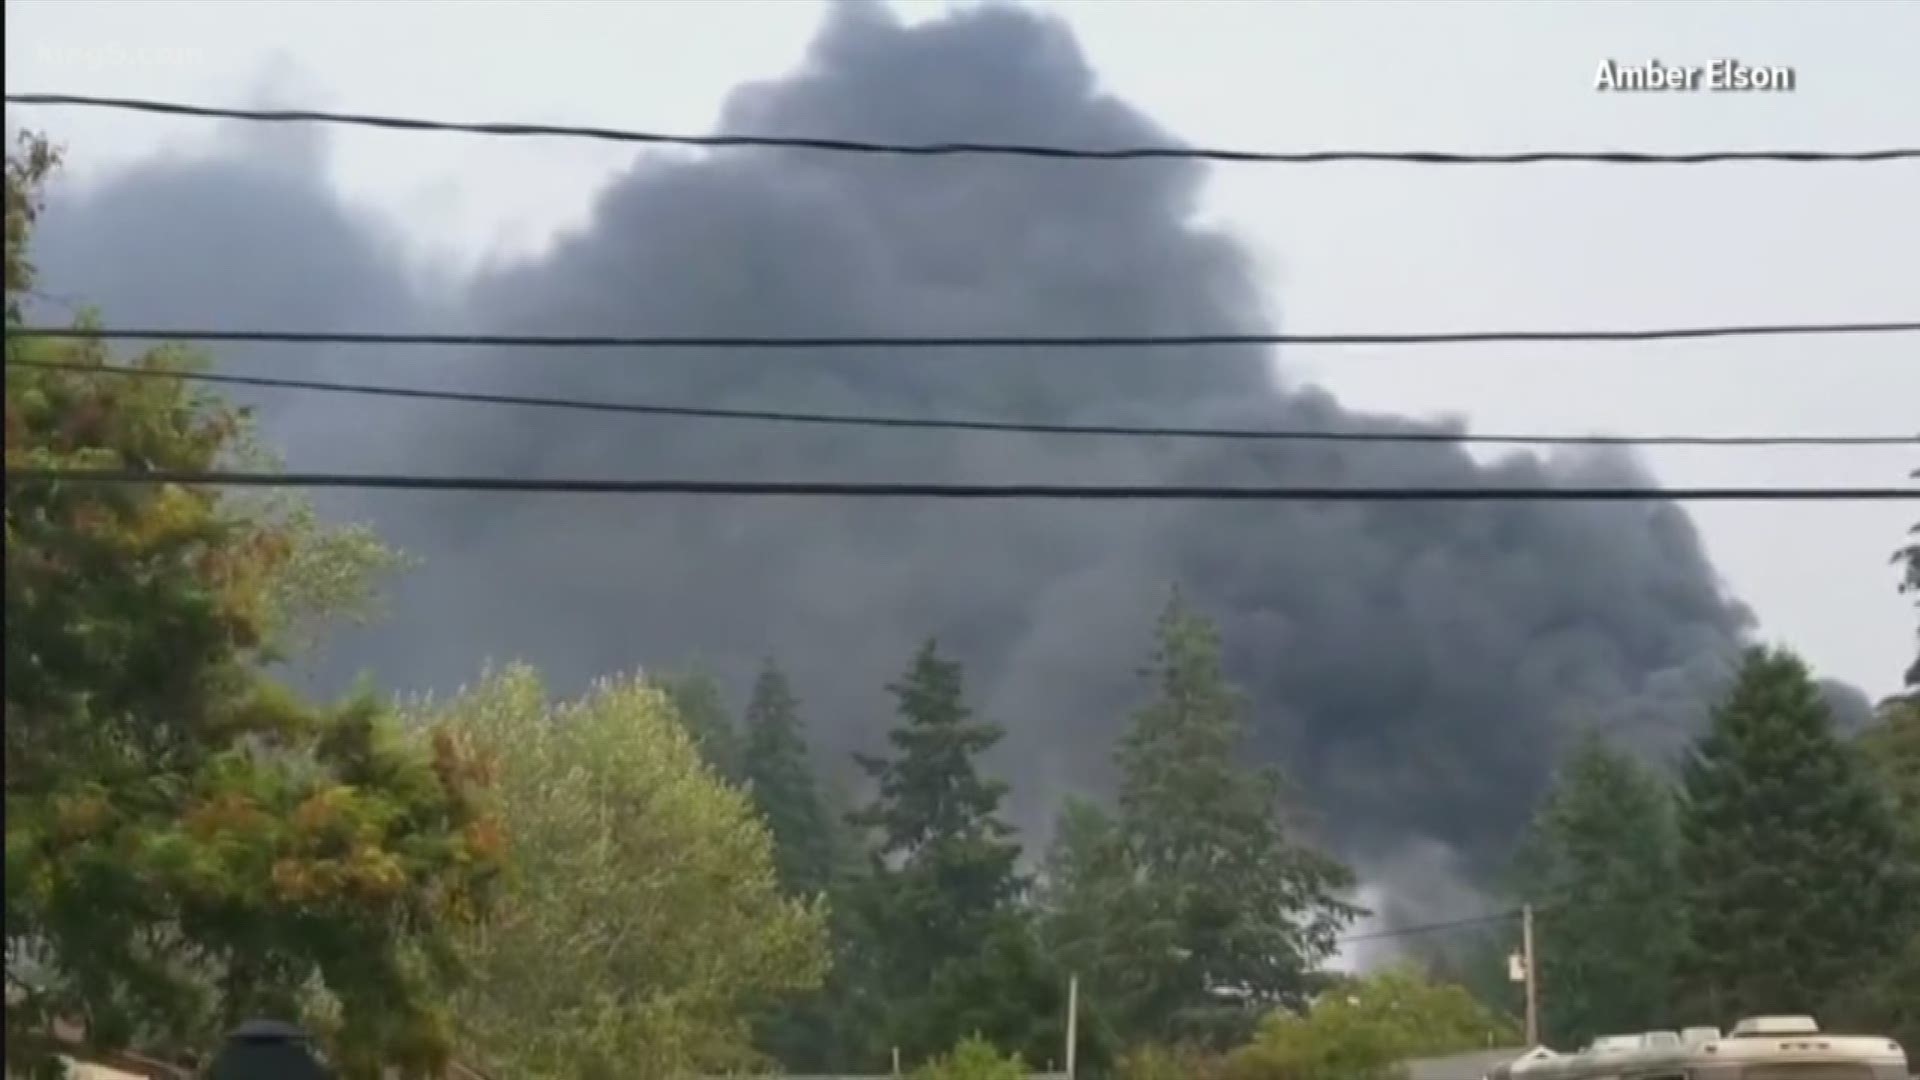 Shelton industrial fire sends toxic smoke into already unhealthy air